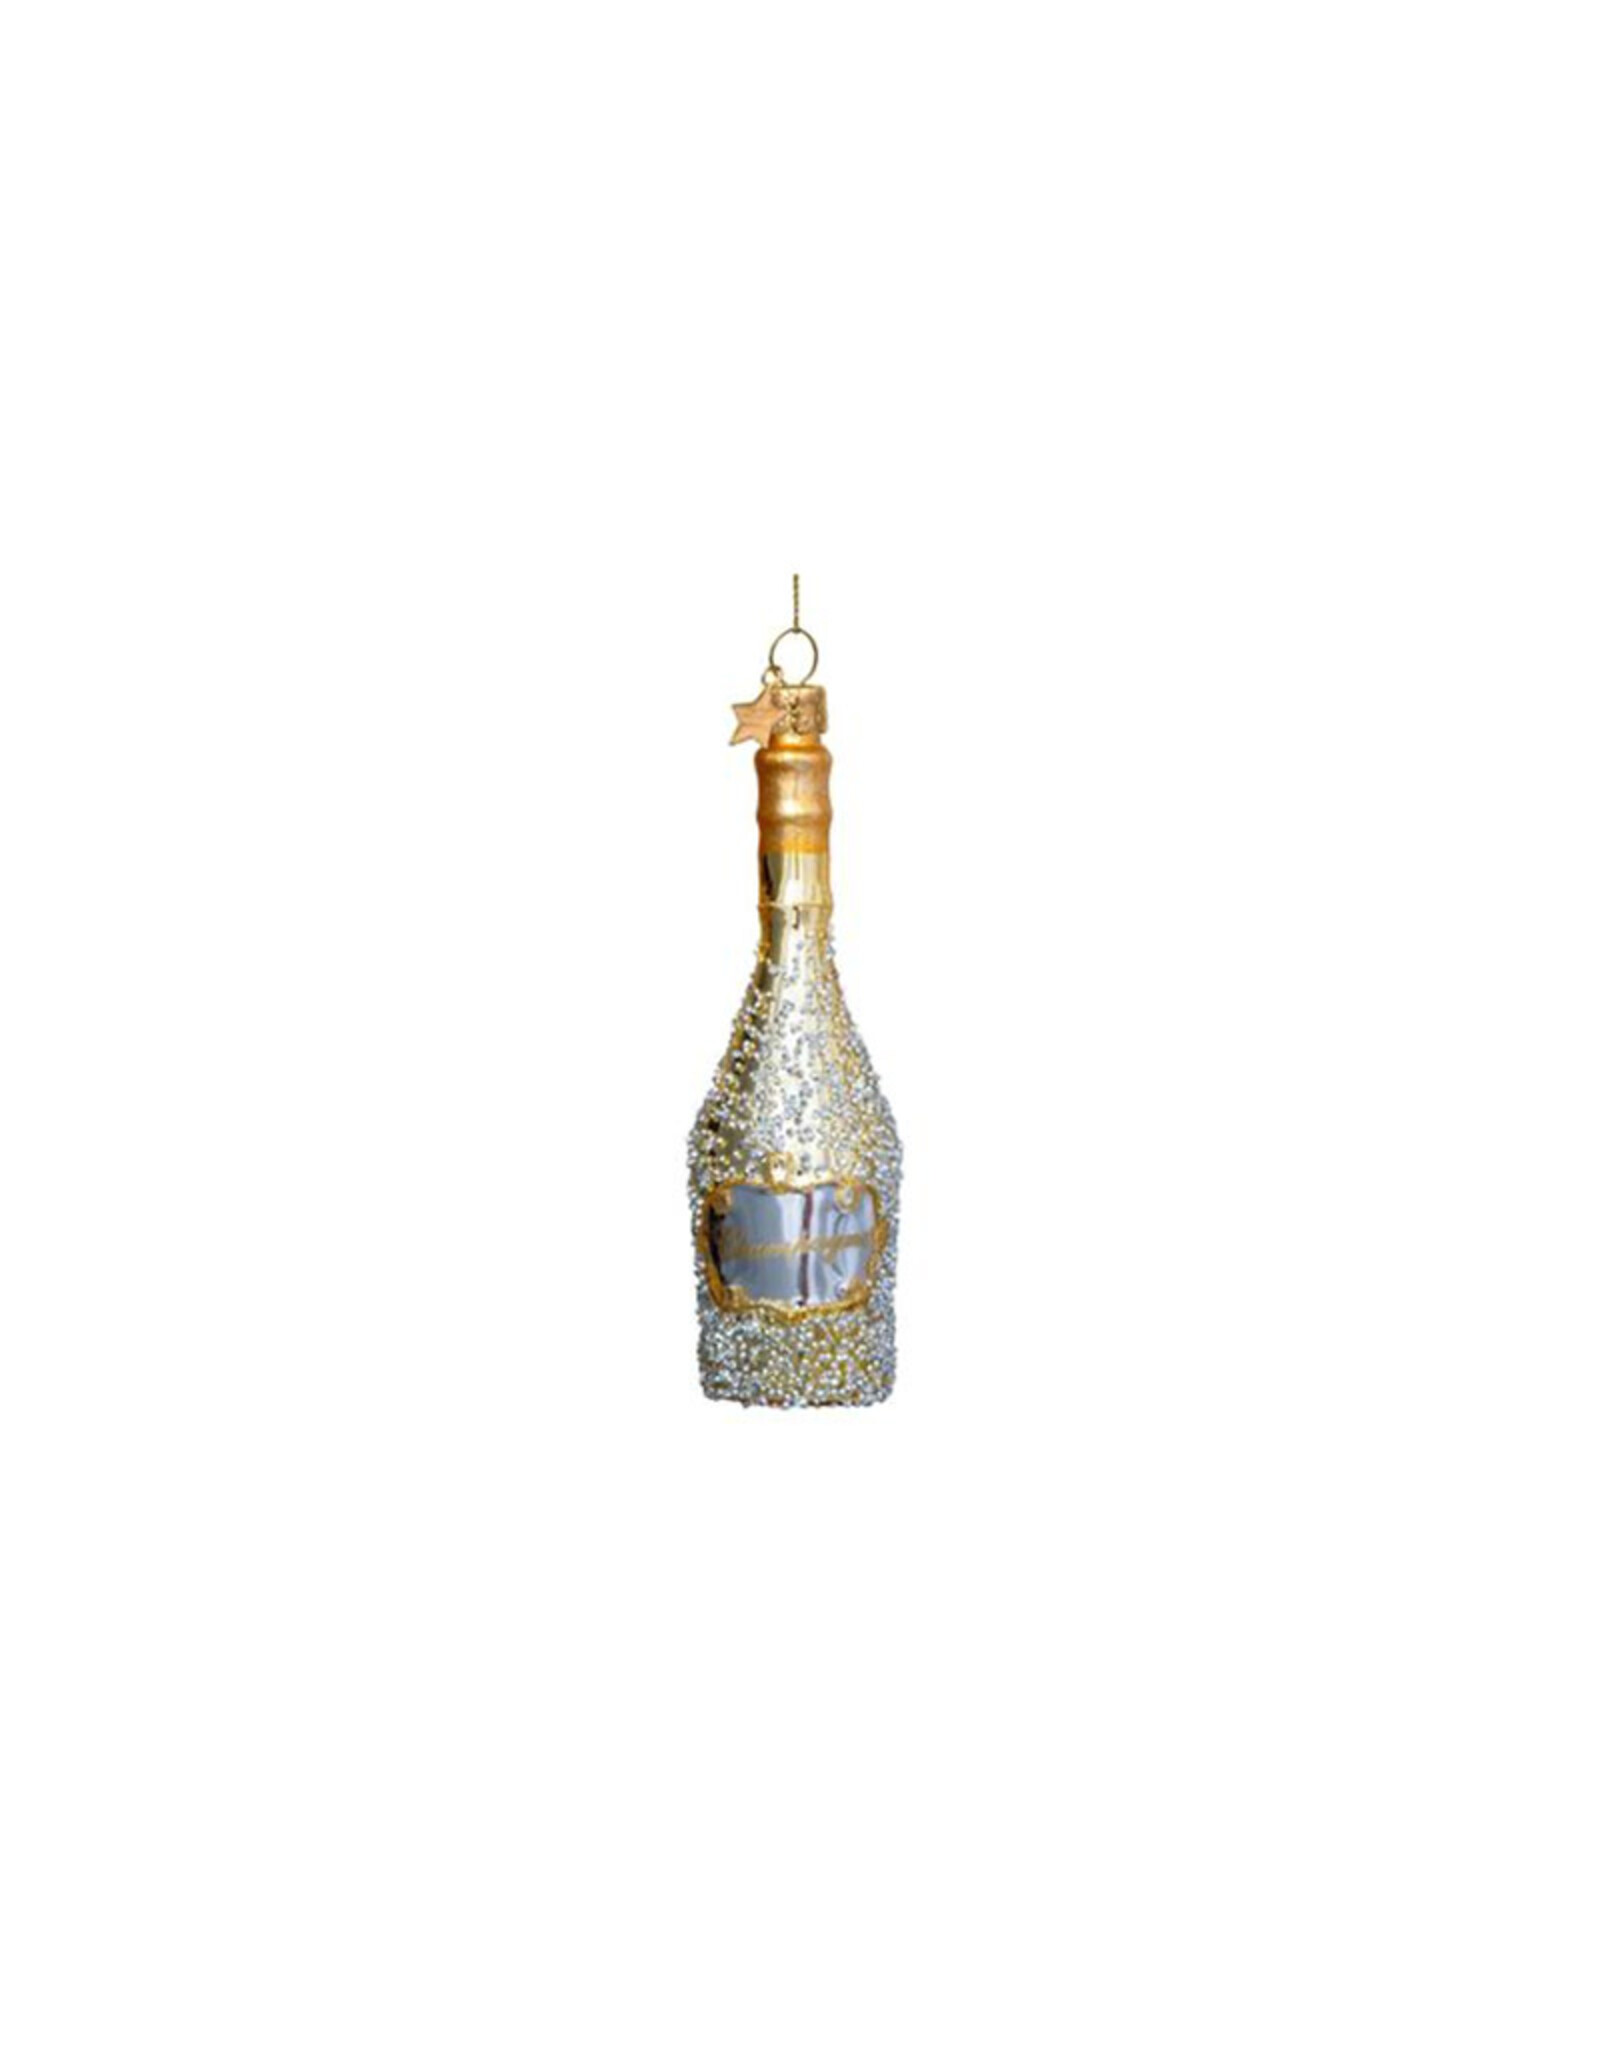 Vondels Glass Ornament - Champagne Bottle